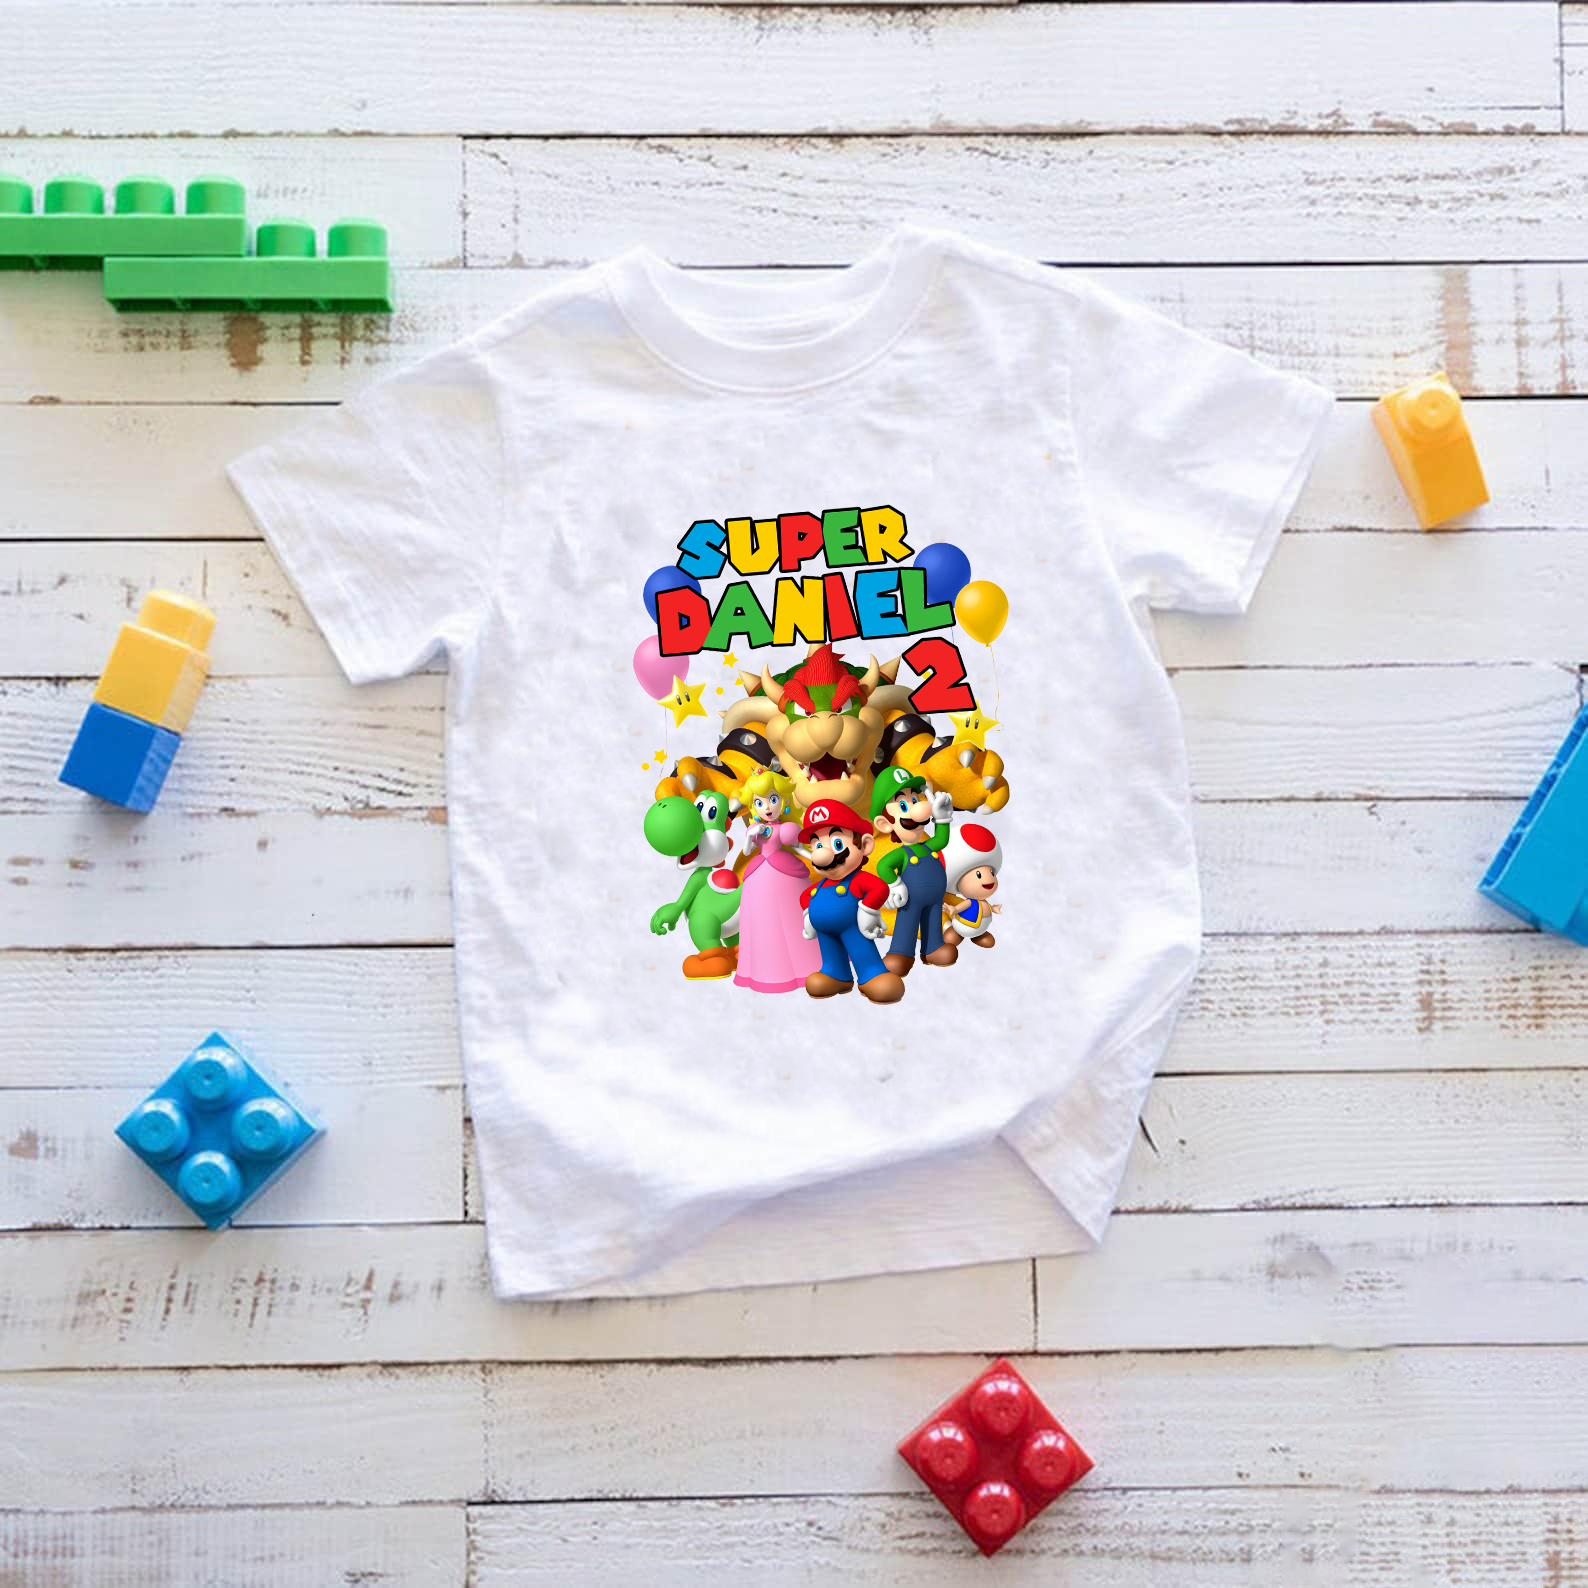 Personalized Super Mario Birthday Shirt, Mario and Luigi Birthday Shirt, Family Matching Shirt